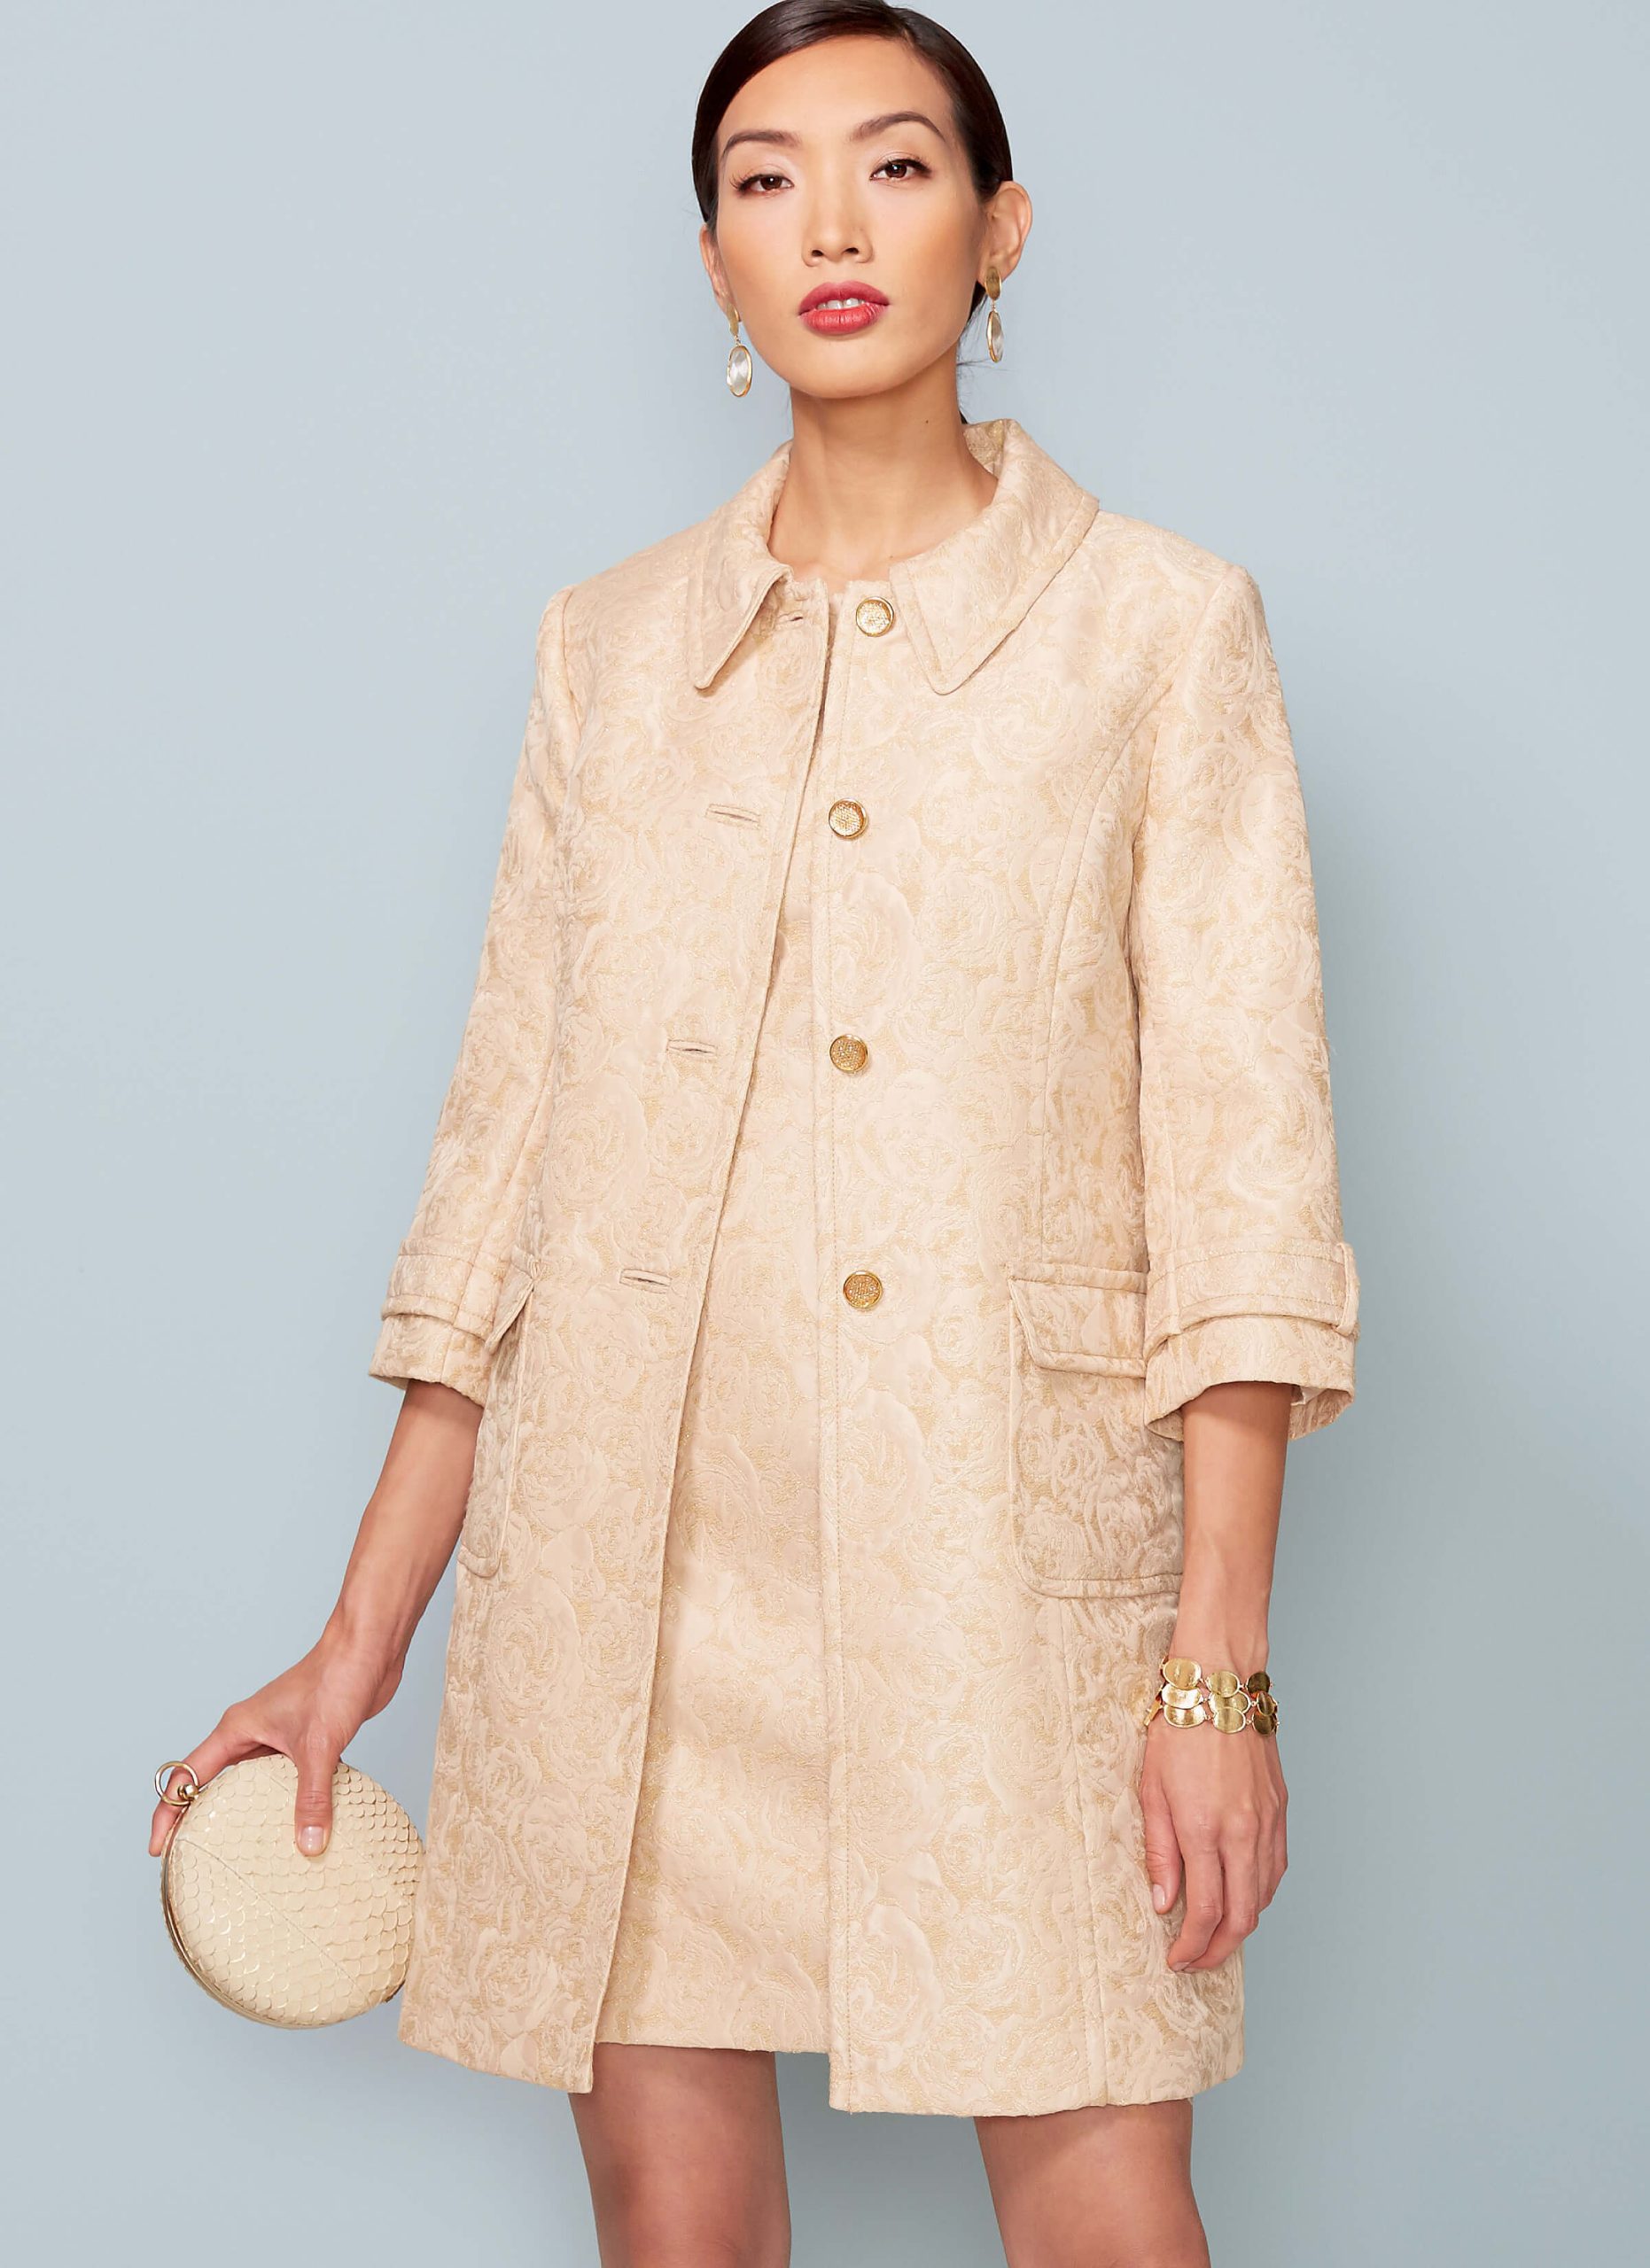 Vogue Patterns V1537 Misses' Princess Seam Jacket and V-Back Dress with Straps